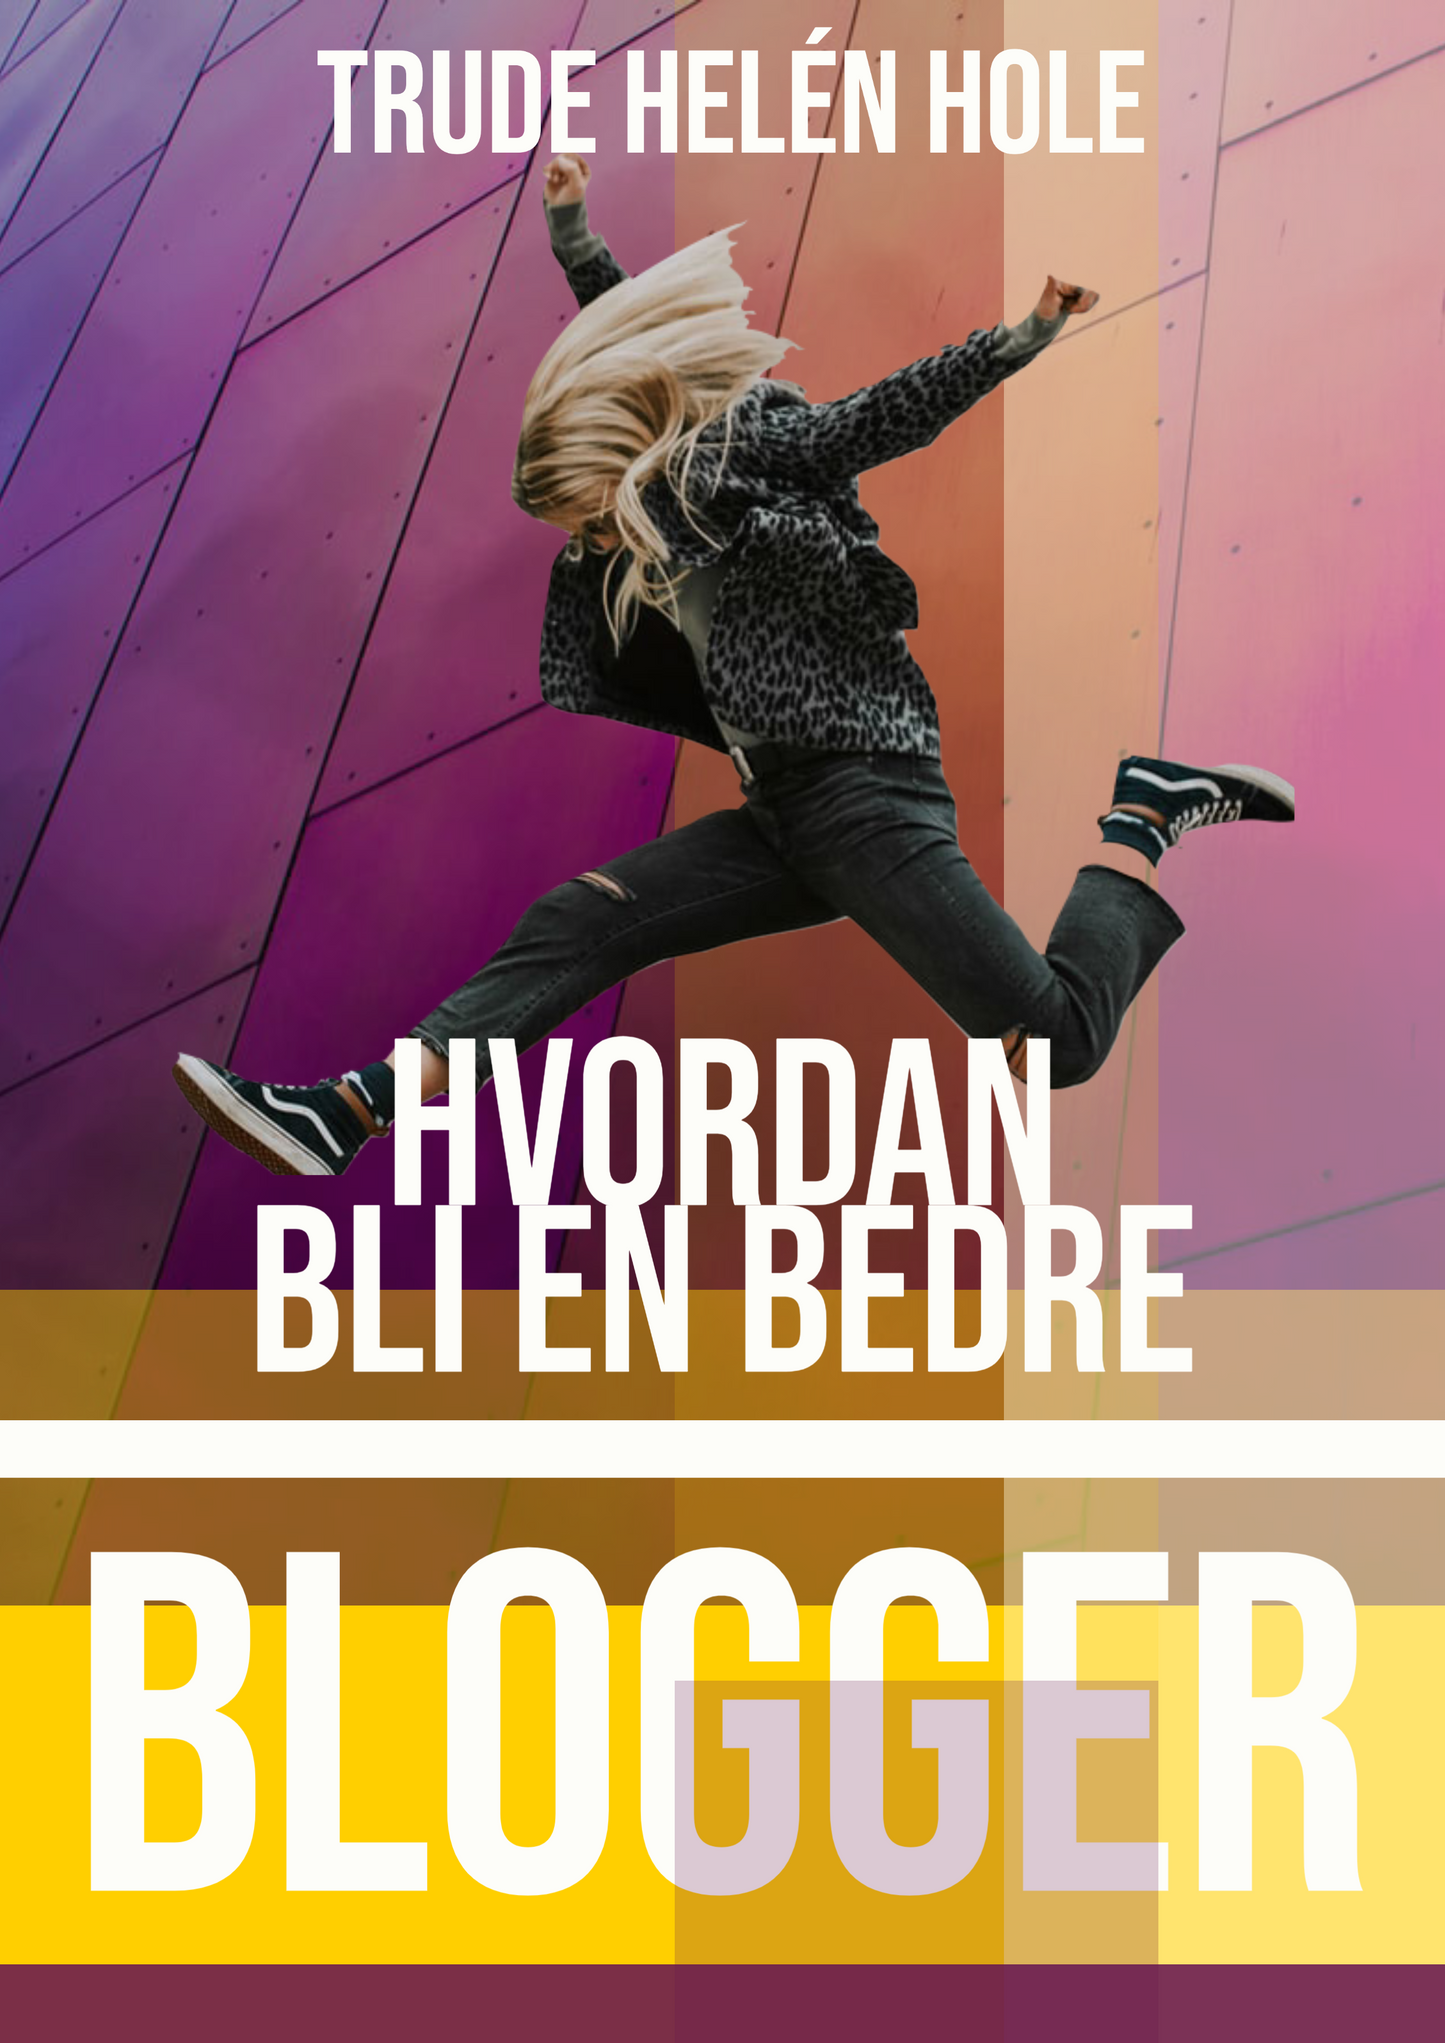 Hvordan bli en bedre blogger